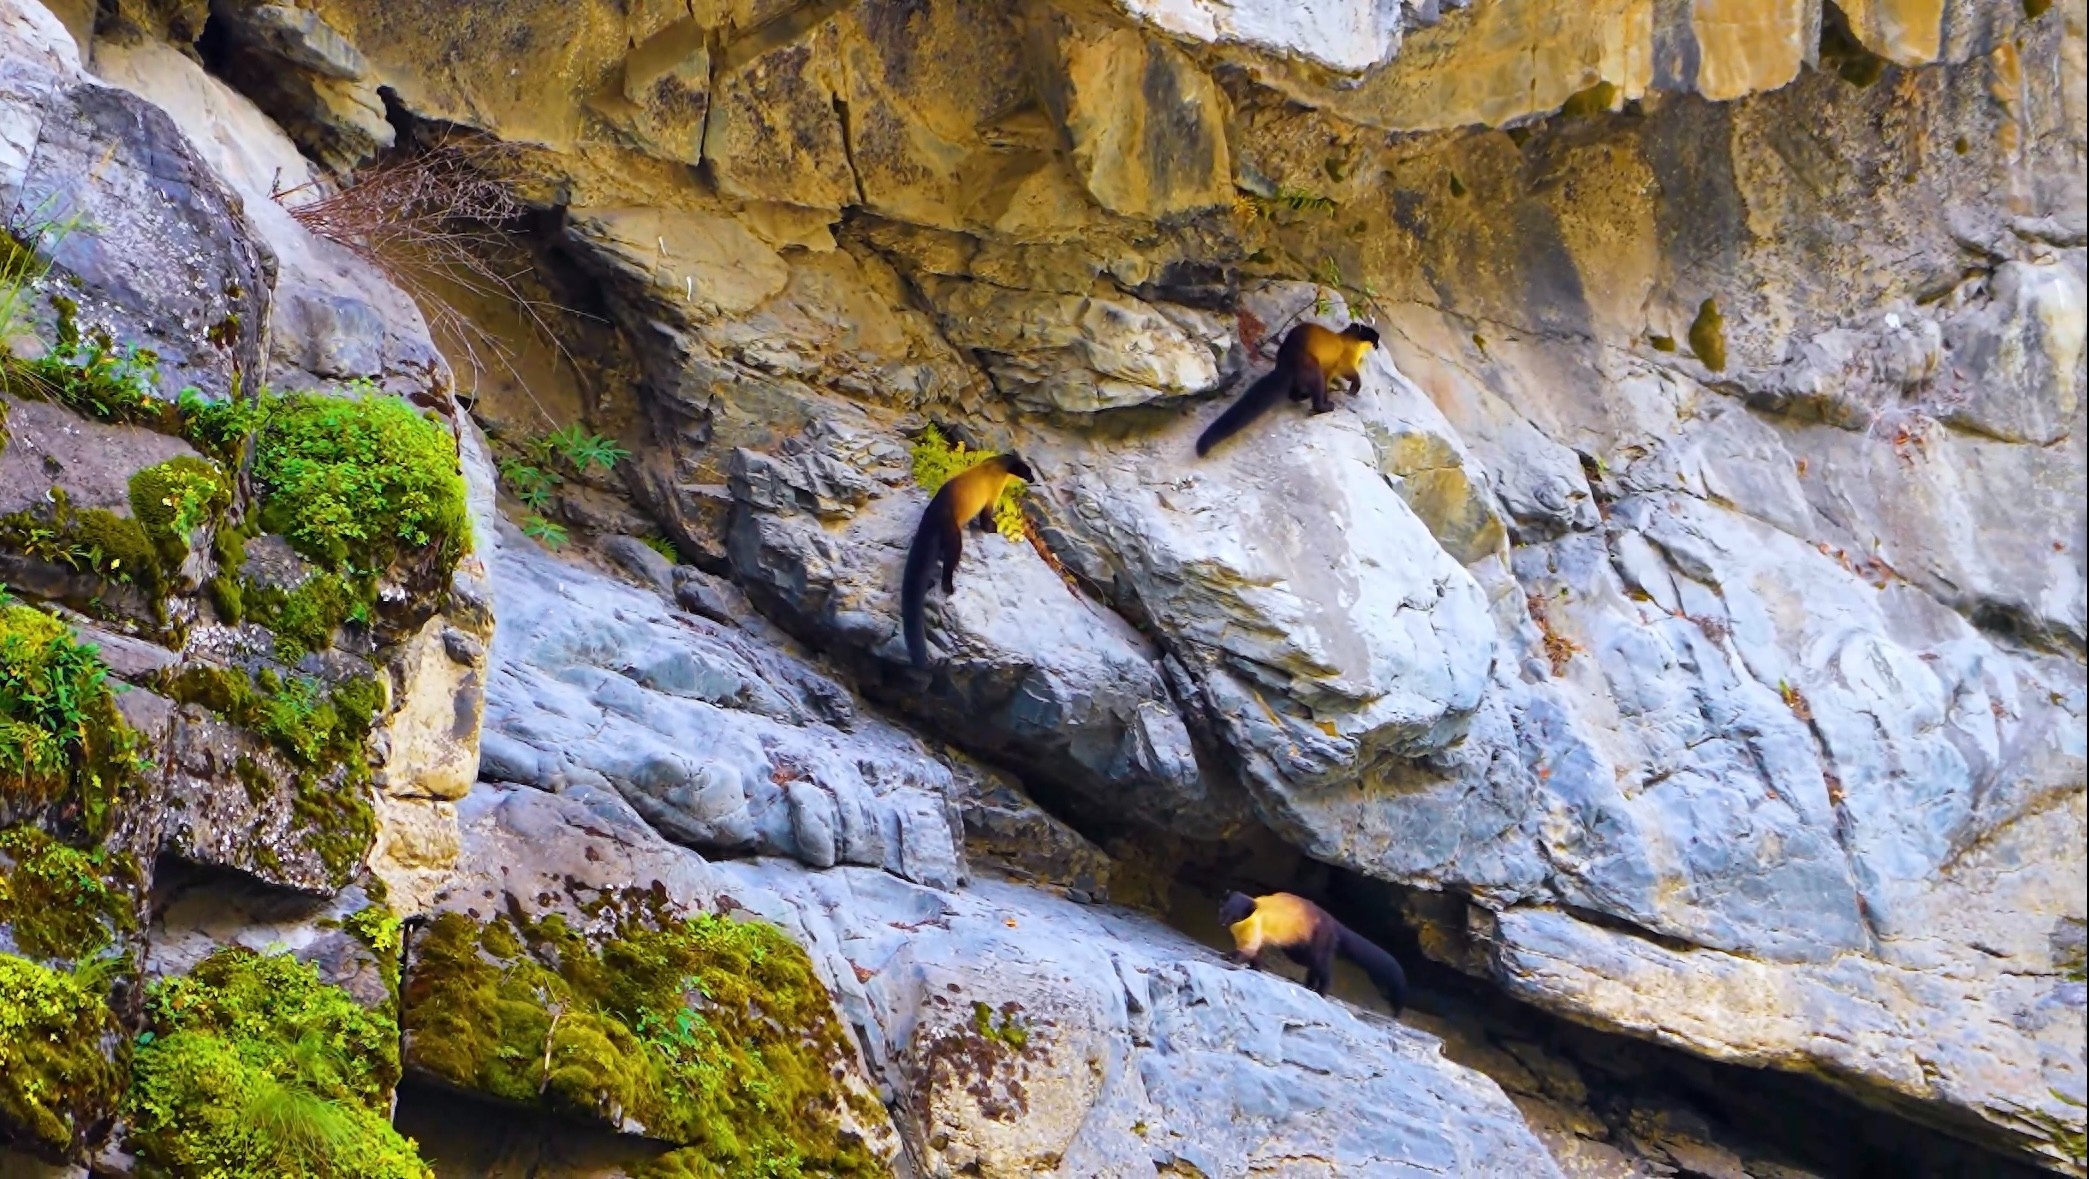 近日，在阿坝州金川县观音桥镇附近，当地摄影爱好者在拍摄自然景观时偶然拍摄到了多只黄喉貂“集体行动”画面。它们时而穿梭于山间密林，时而跳跃于峭壁巨石，时而嬉戏于河流